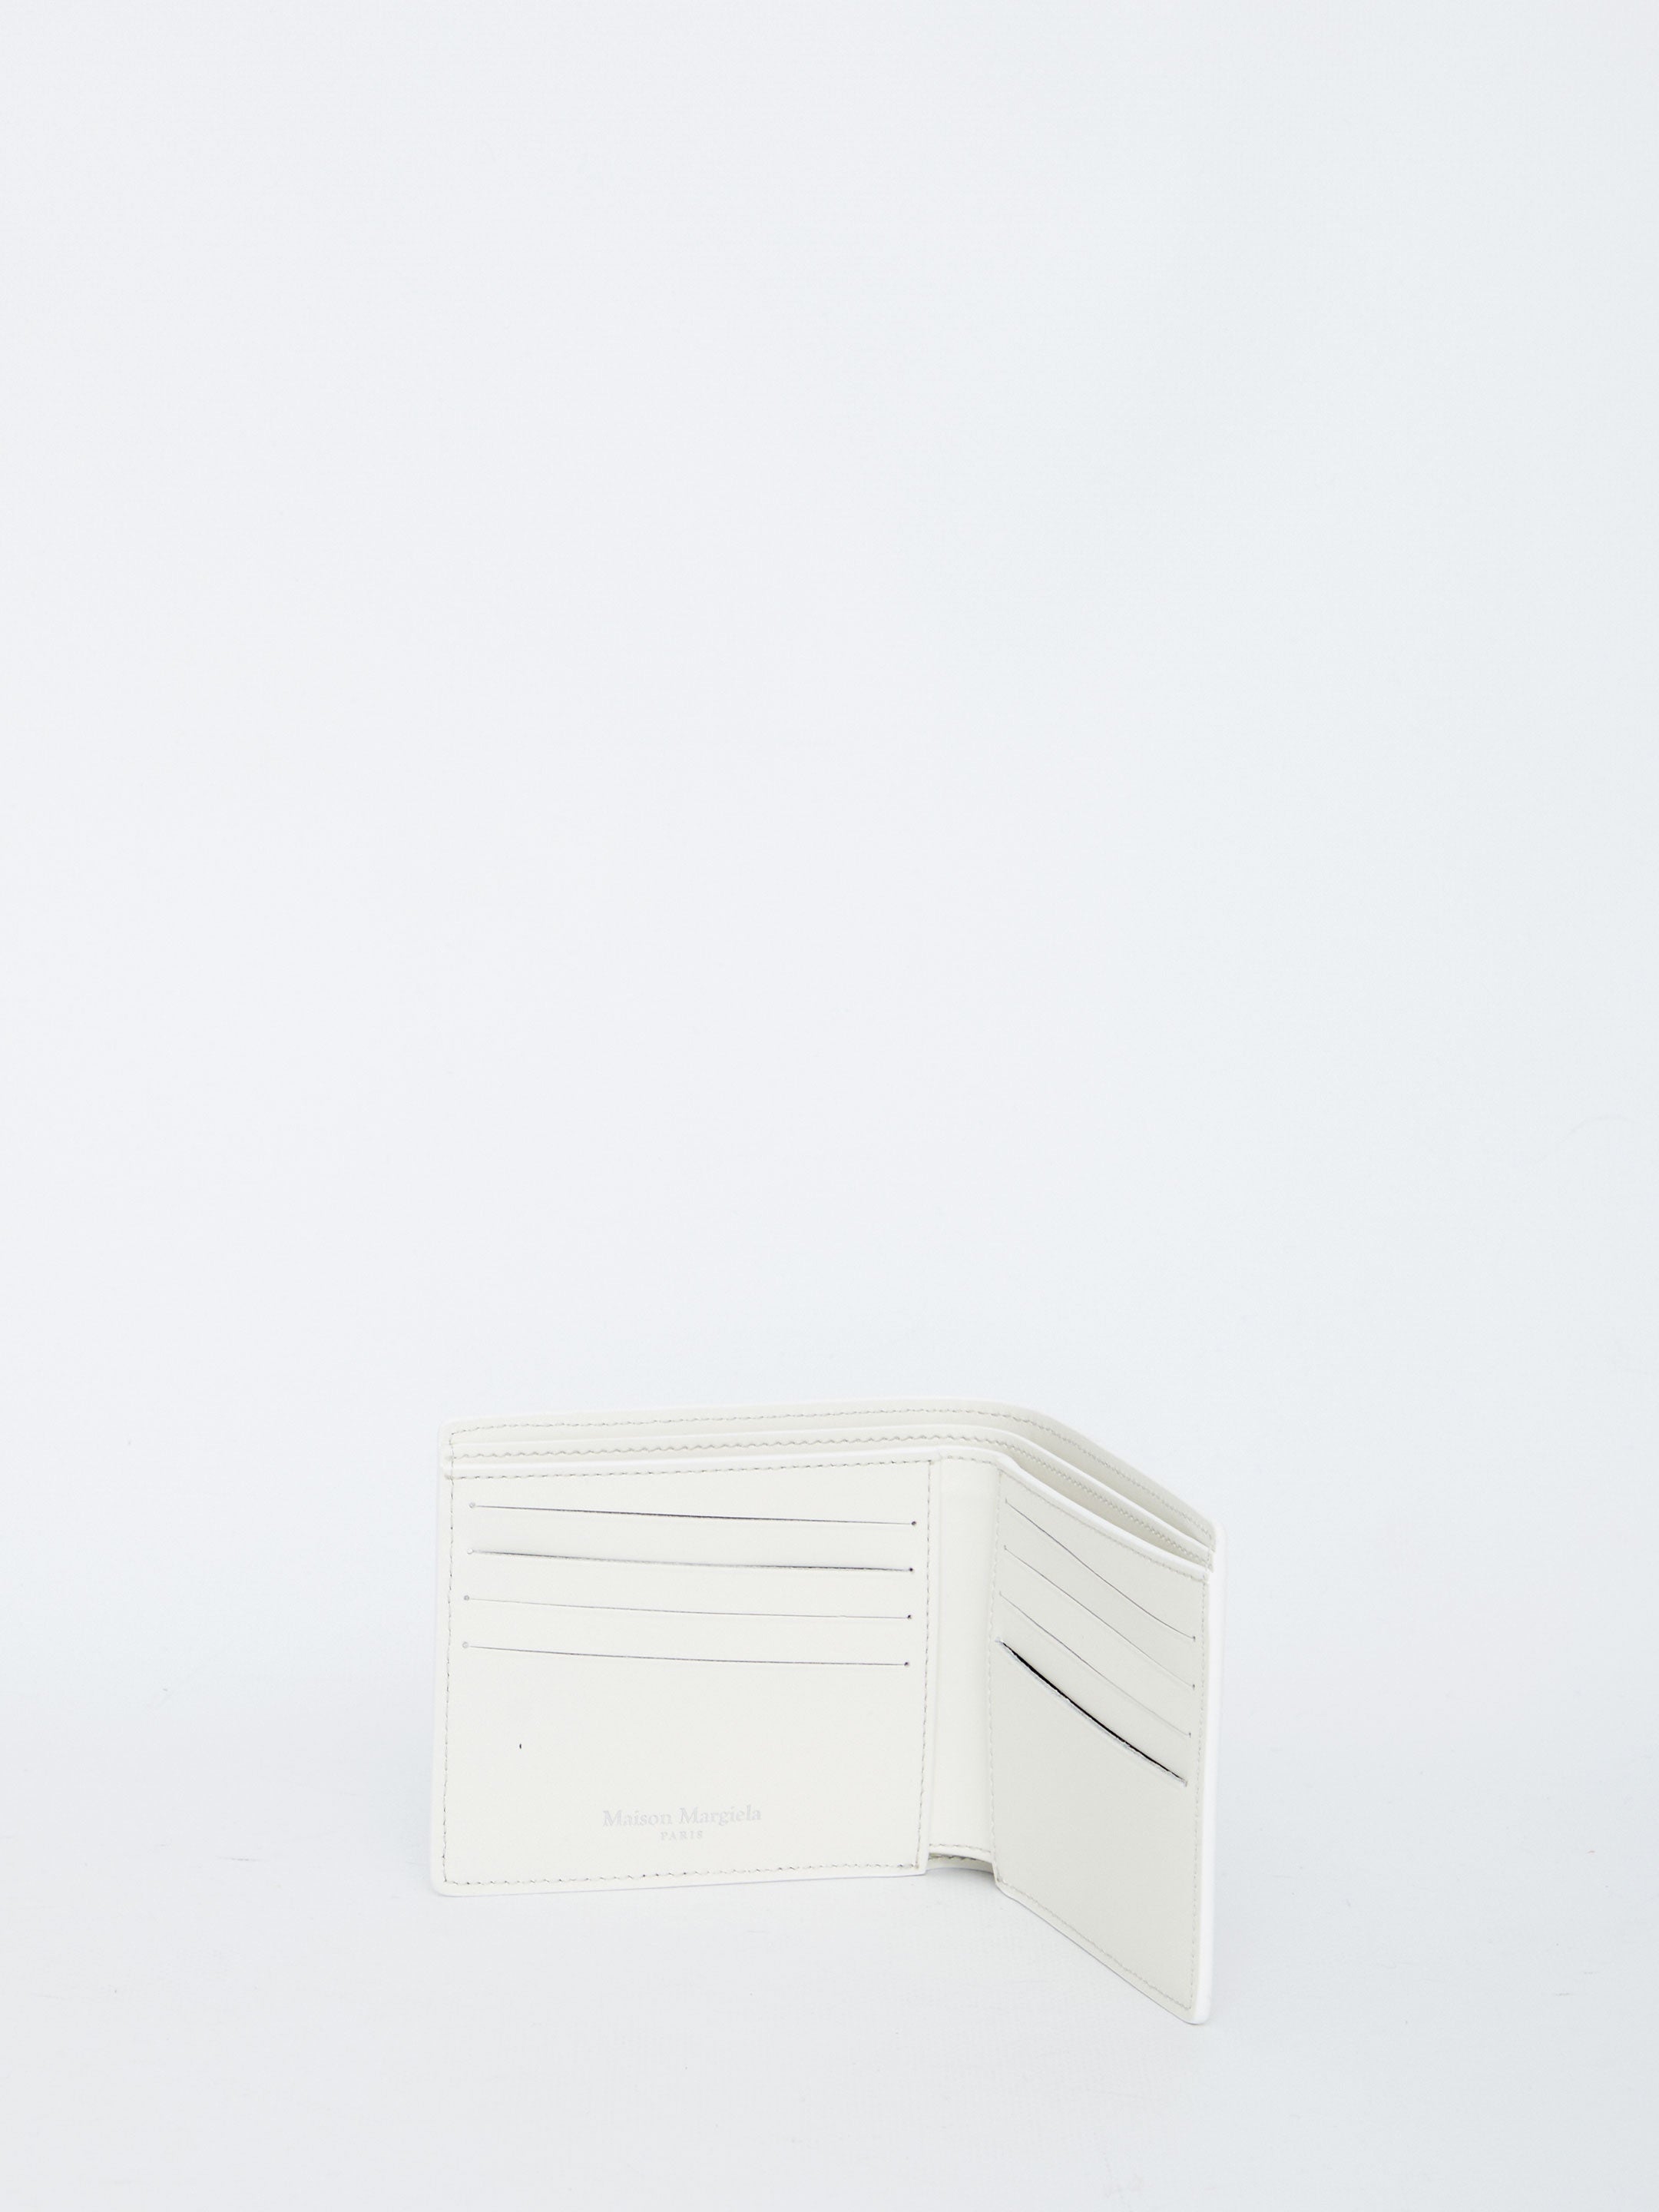 White bi-fold wallet